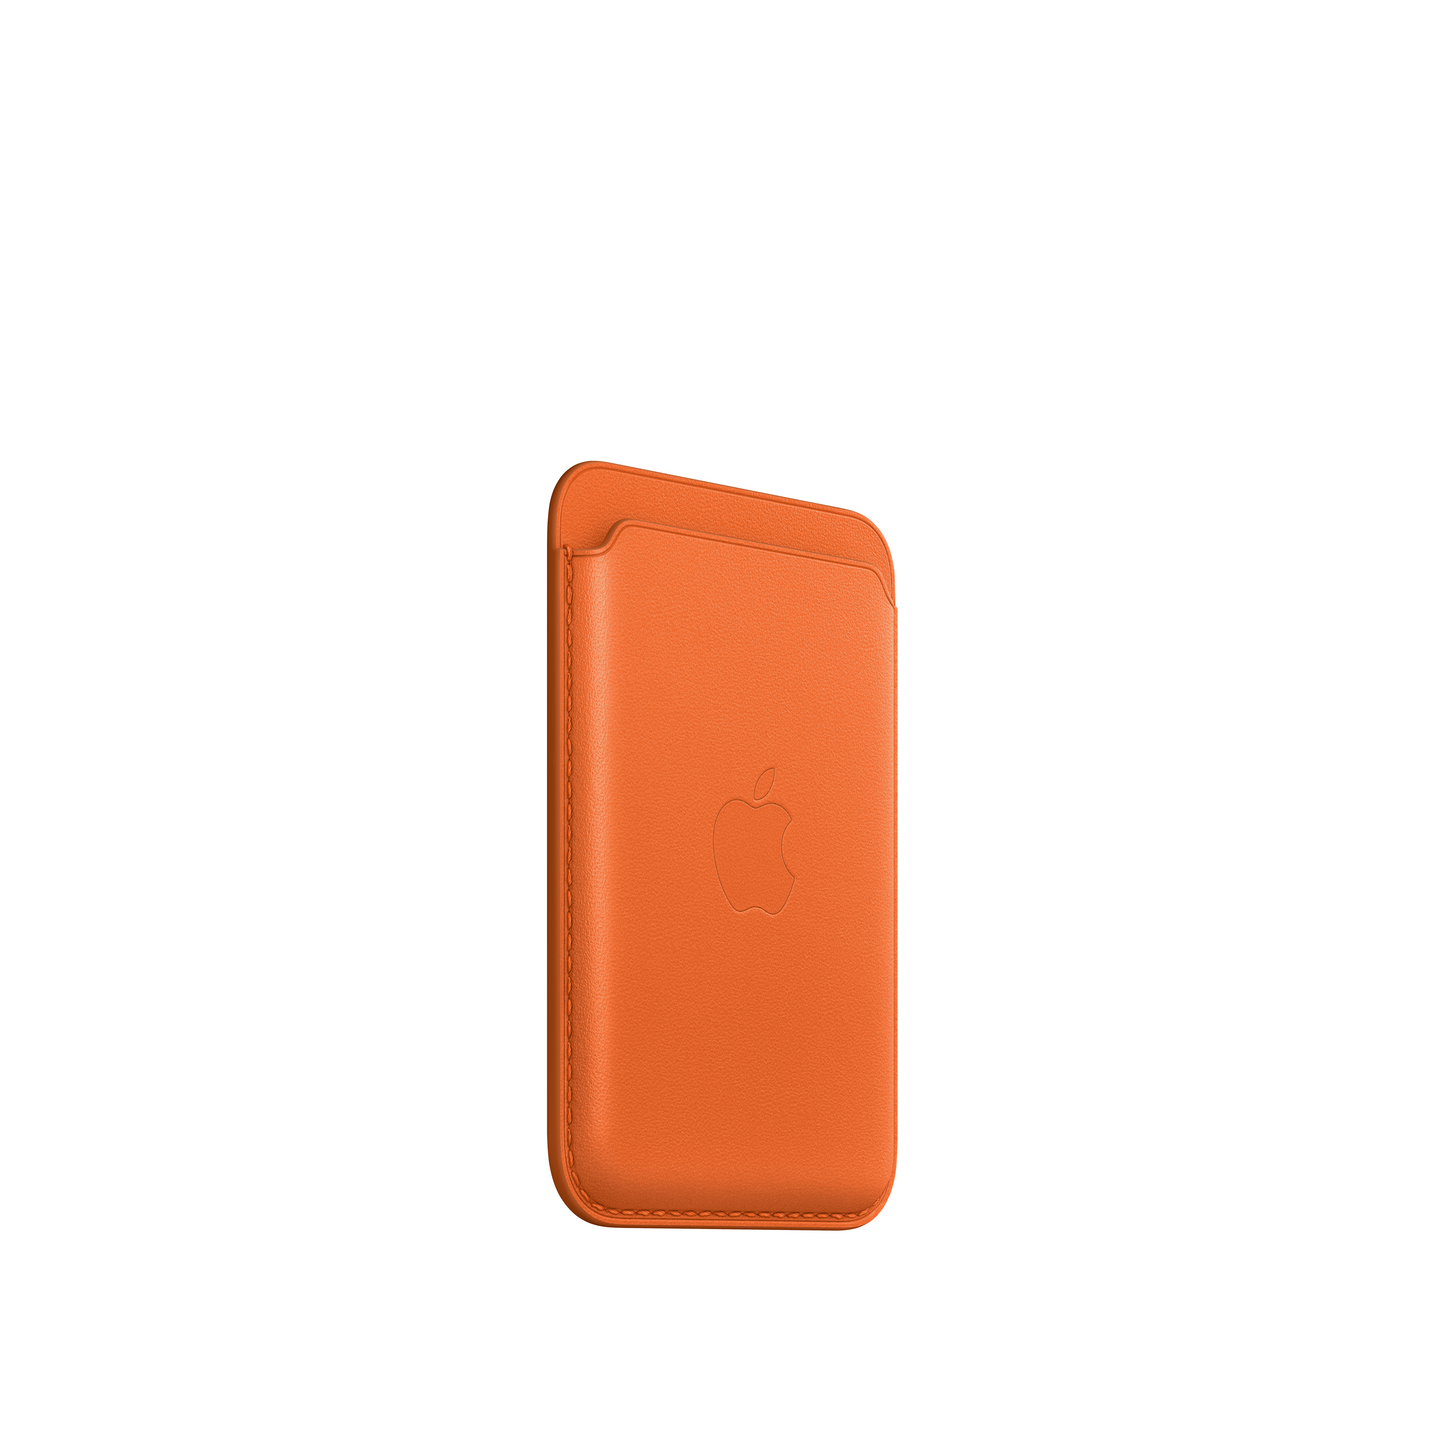 Cartera de piel con MagSafe para el iPhone - Naranja - Rossellimac